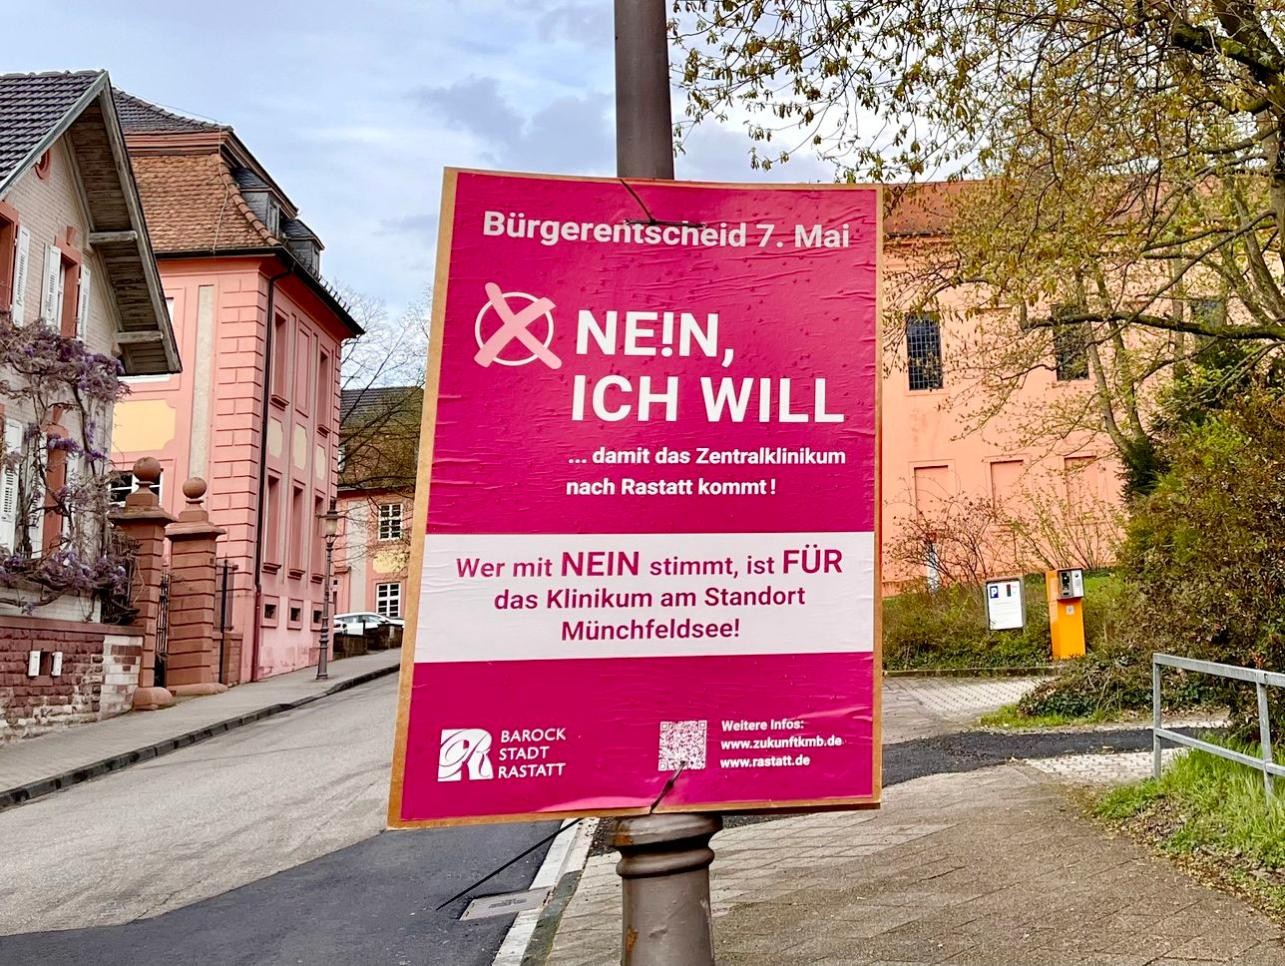 Plakat zur Nein-Kampagne der Stadt Rastatt zum Bürgerentscheid am 7. Mai, das in Rastatt an einer Laterne hängt